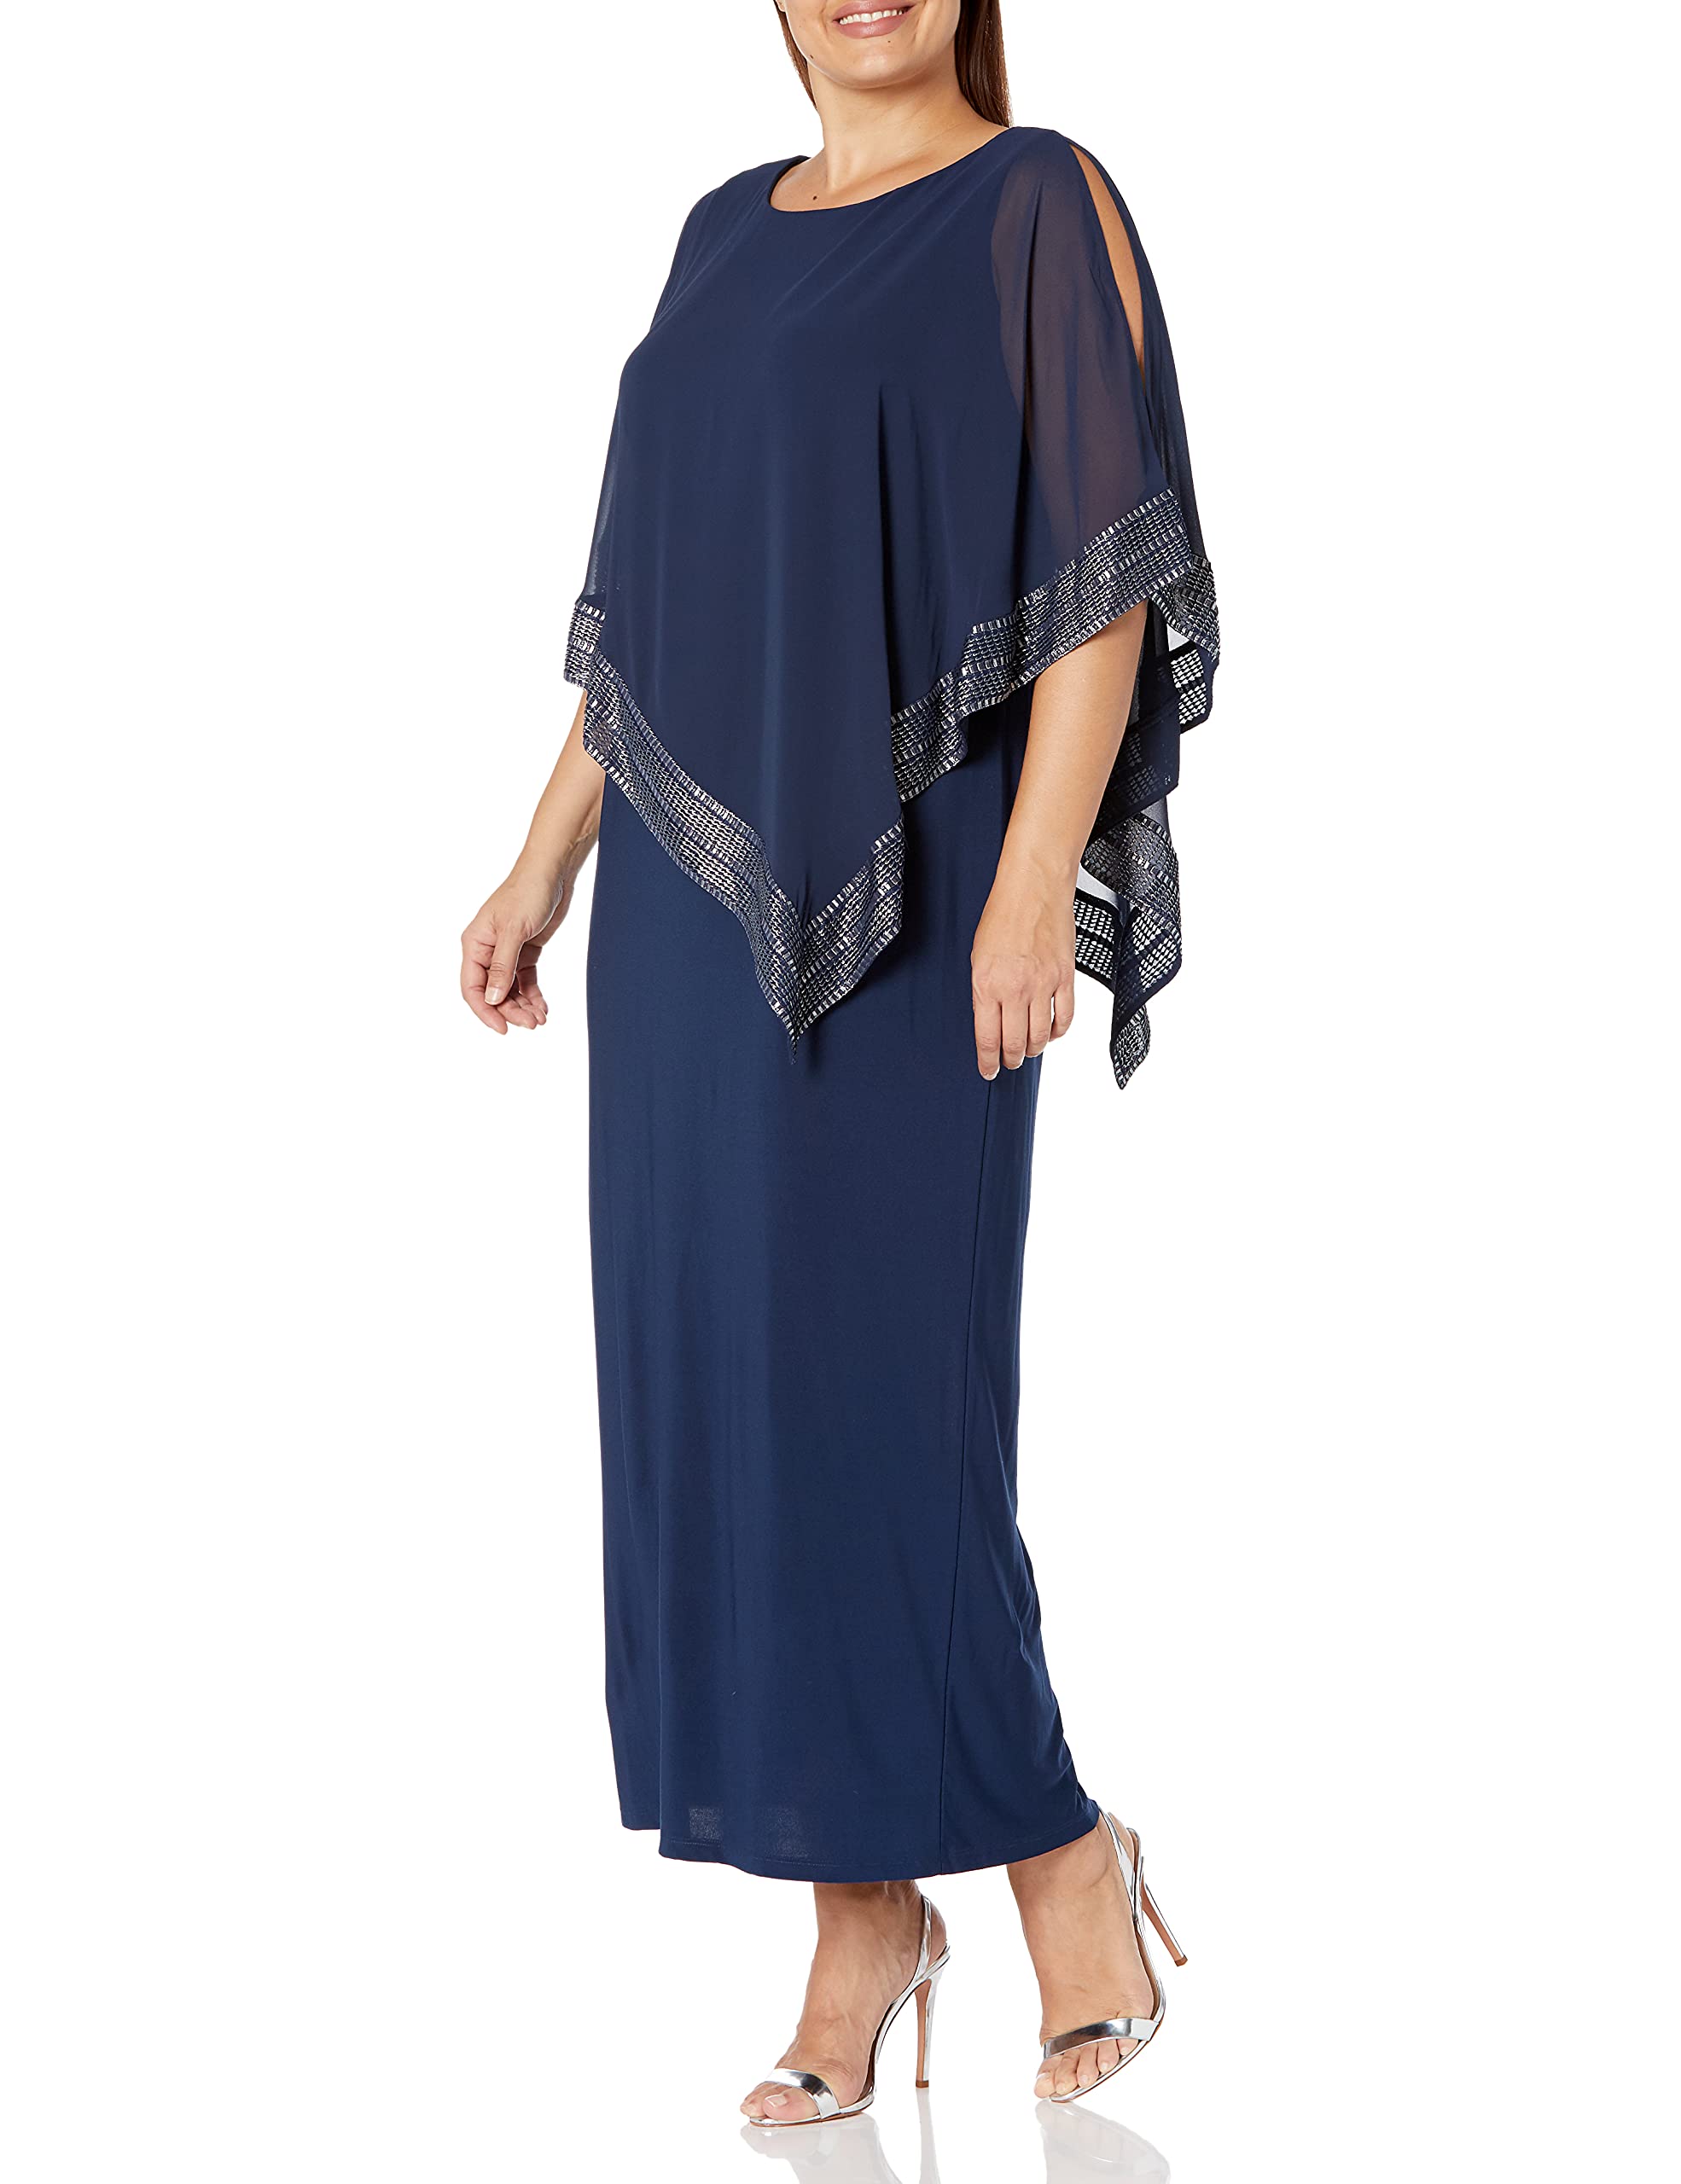 S.L. Fashions Women's Plus Size Long Cold Shoulder Capelet Dress with Metallic Trim